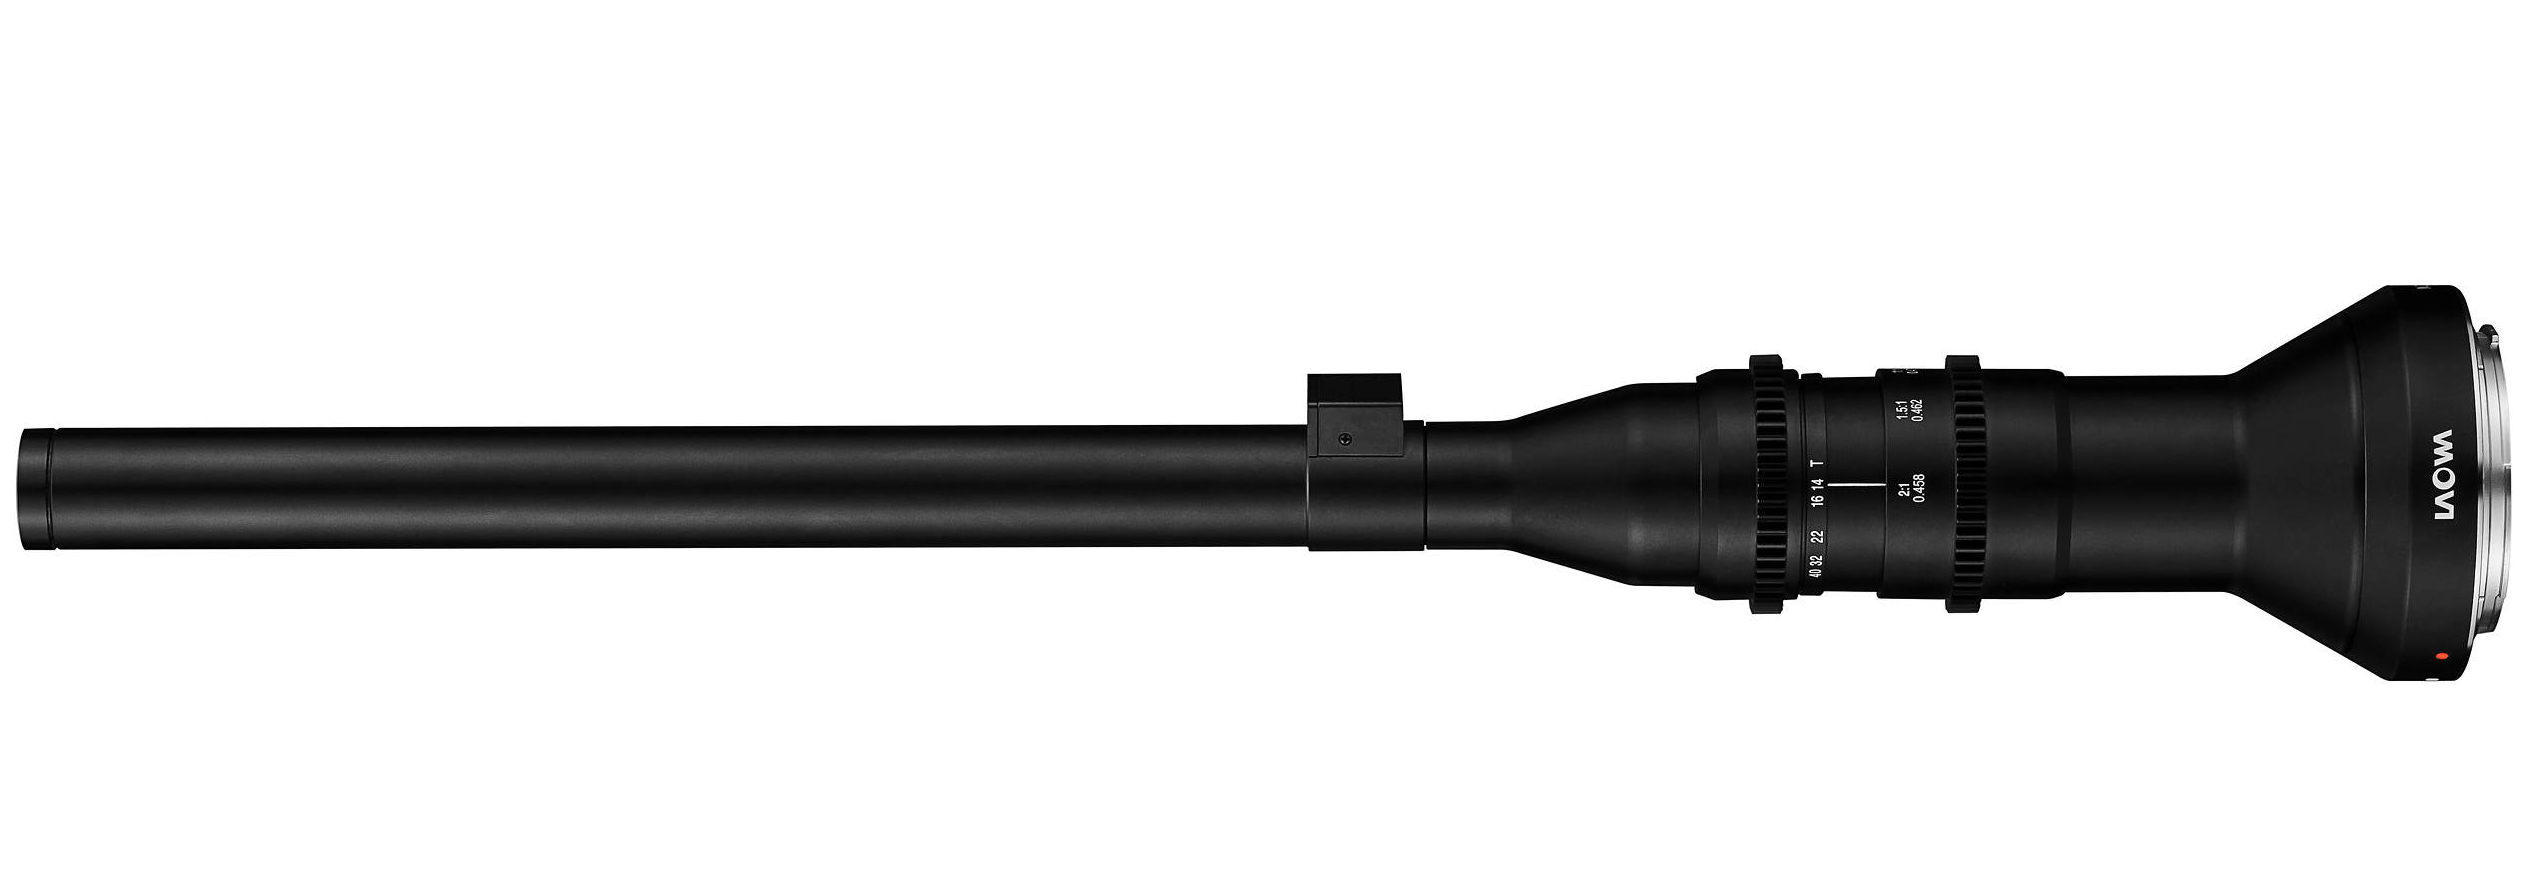 LAOWA FF 24mm F14 2x MACRO PROBE